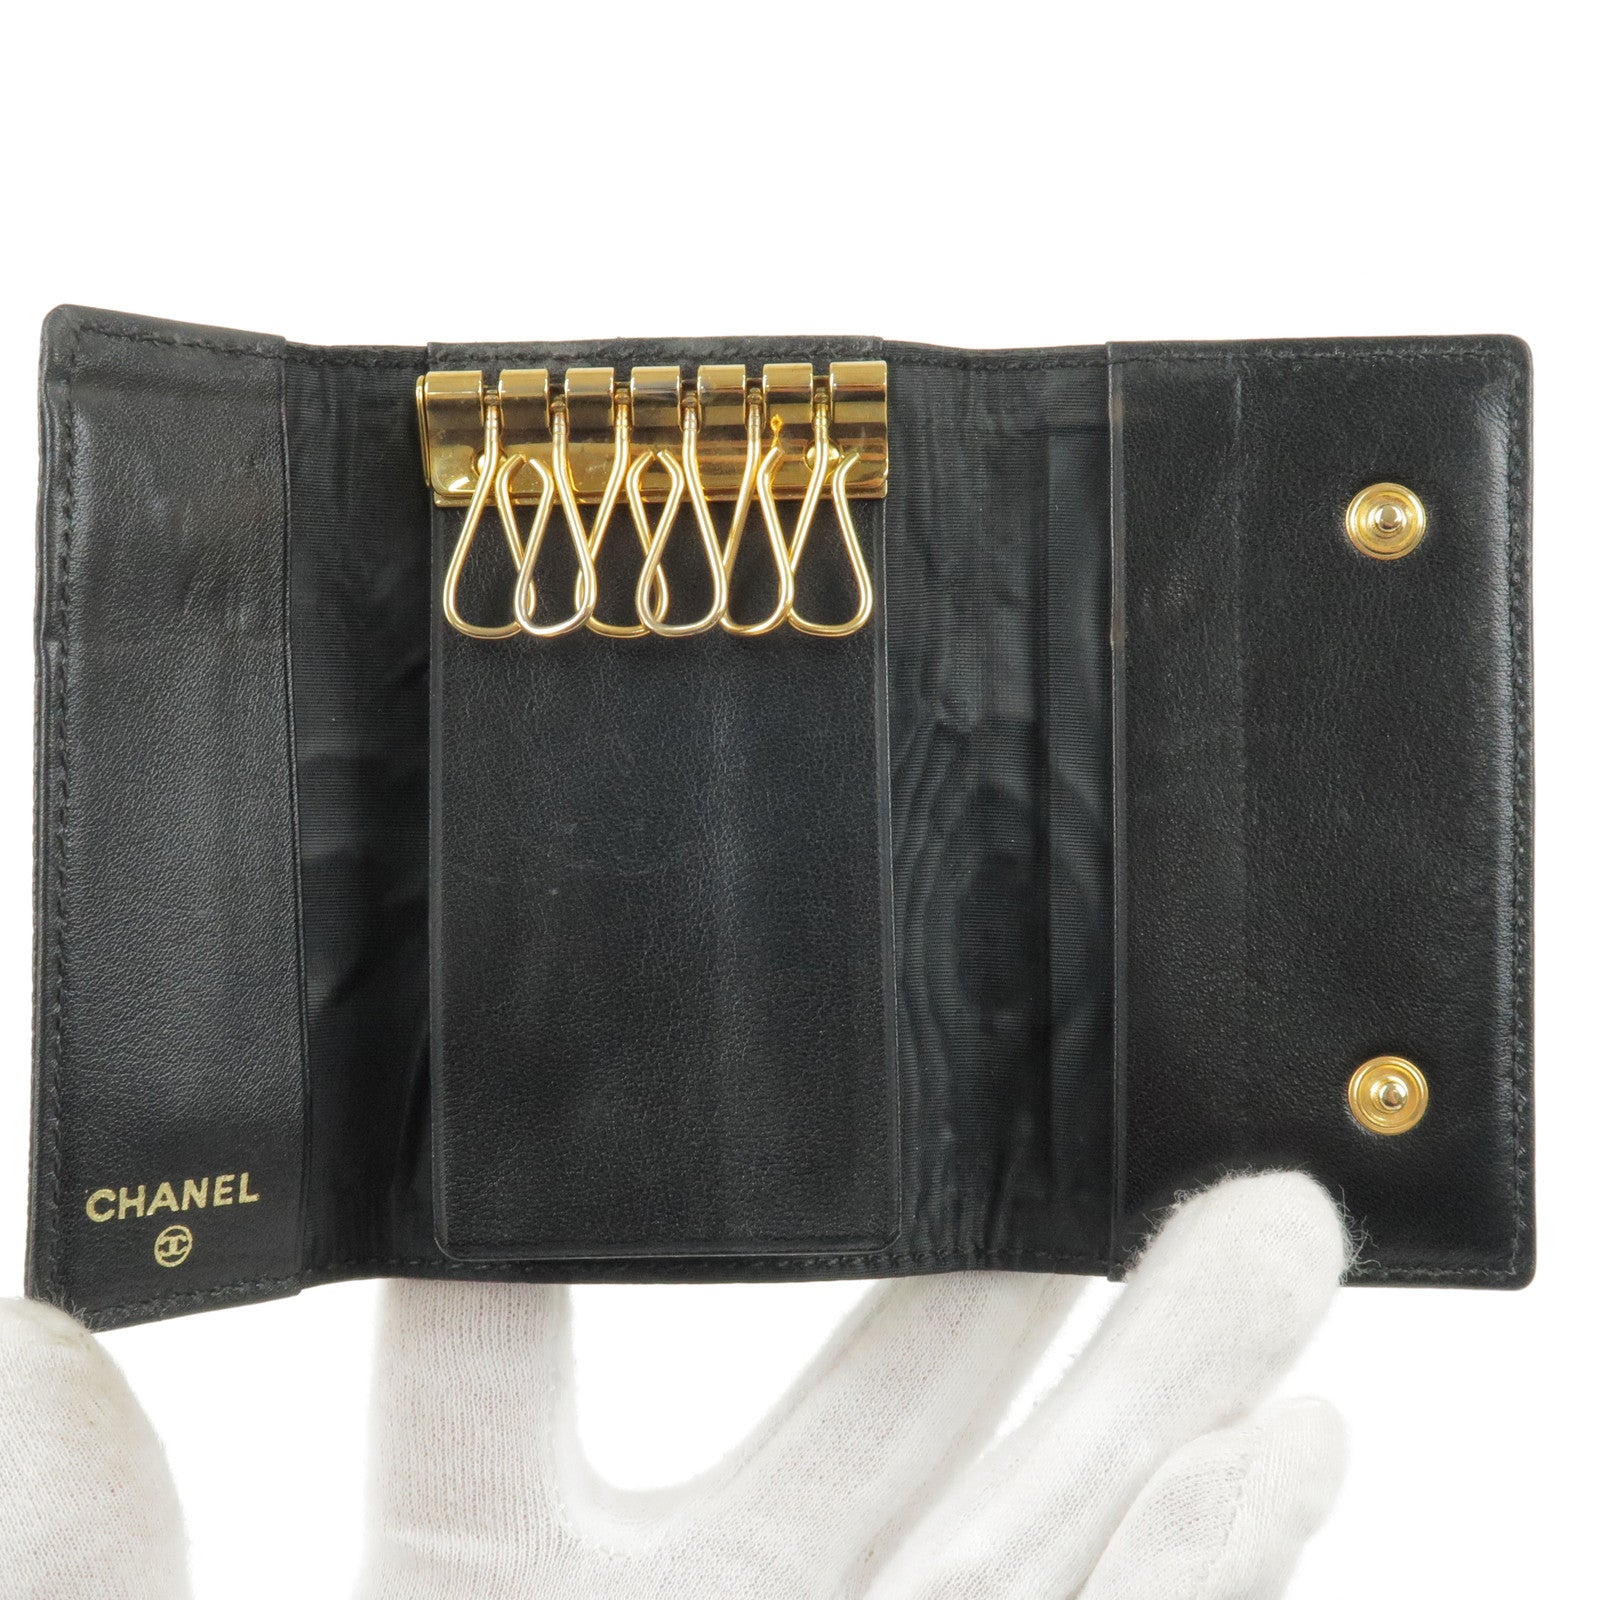 chanel key wallet